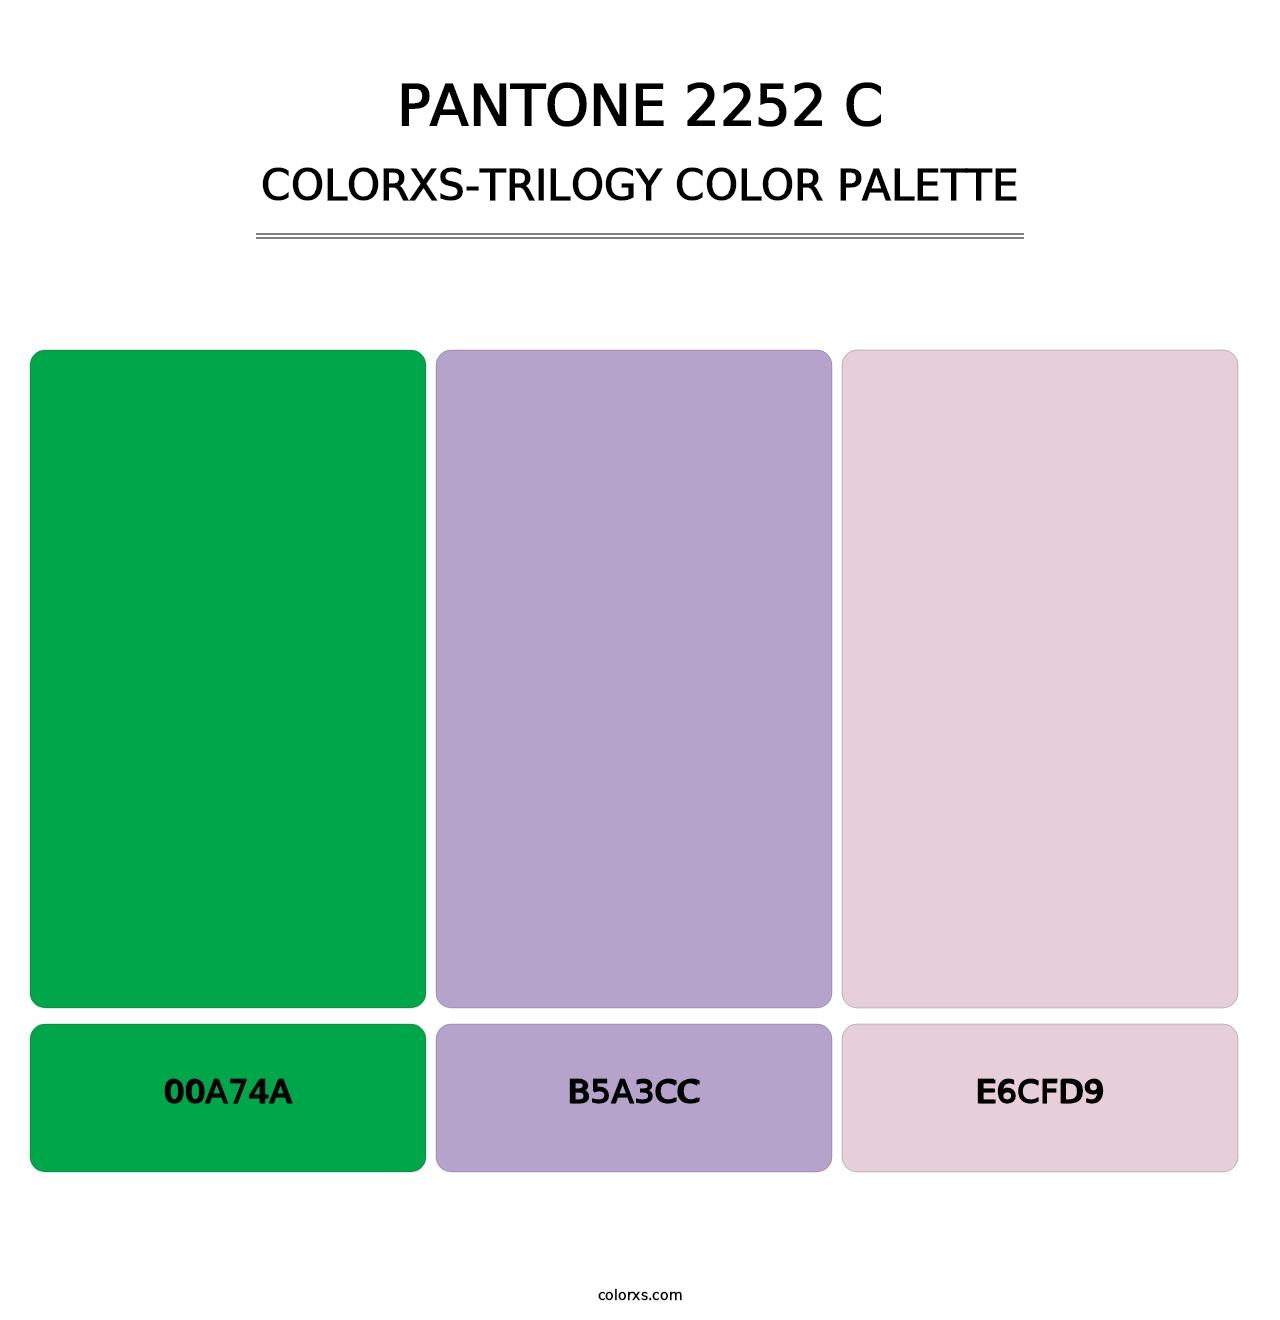 PANTONE 2252 C - Colorxs Trilogy Palette